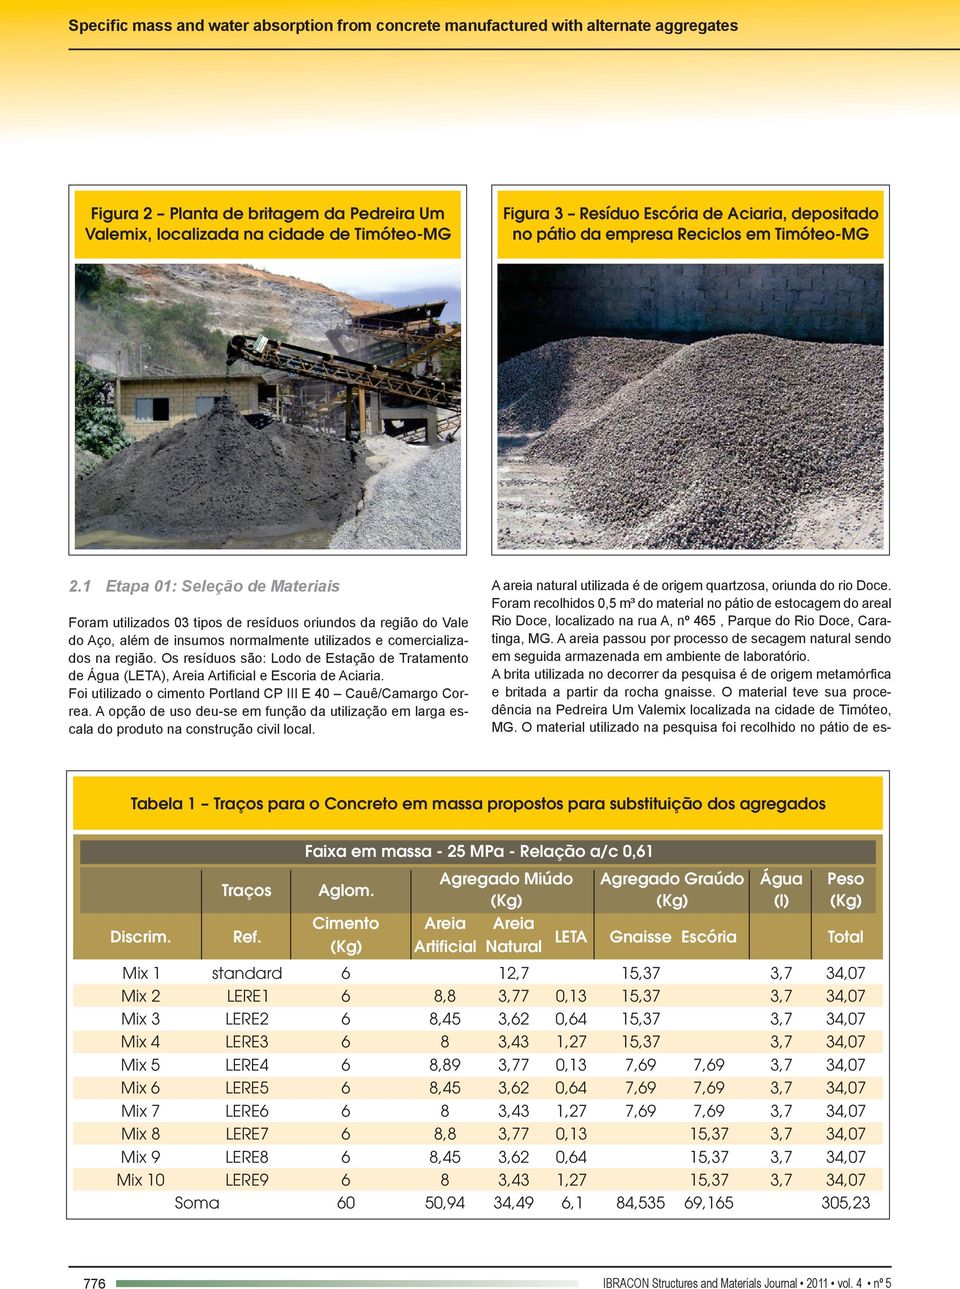 Os resíduos são: Lodo de Estação de Tratamento de Água (LETA), Areia Artificial e Escoria de Aciaria. Foi utilizado o cimento Portland CP III E 40 Cauê/Camargo Correa.